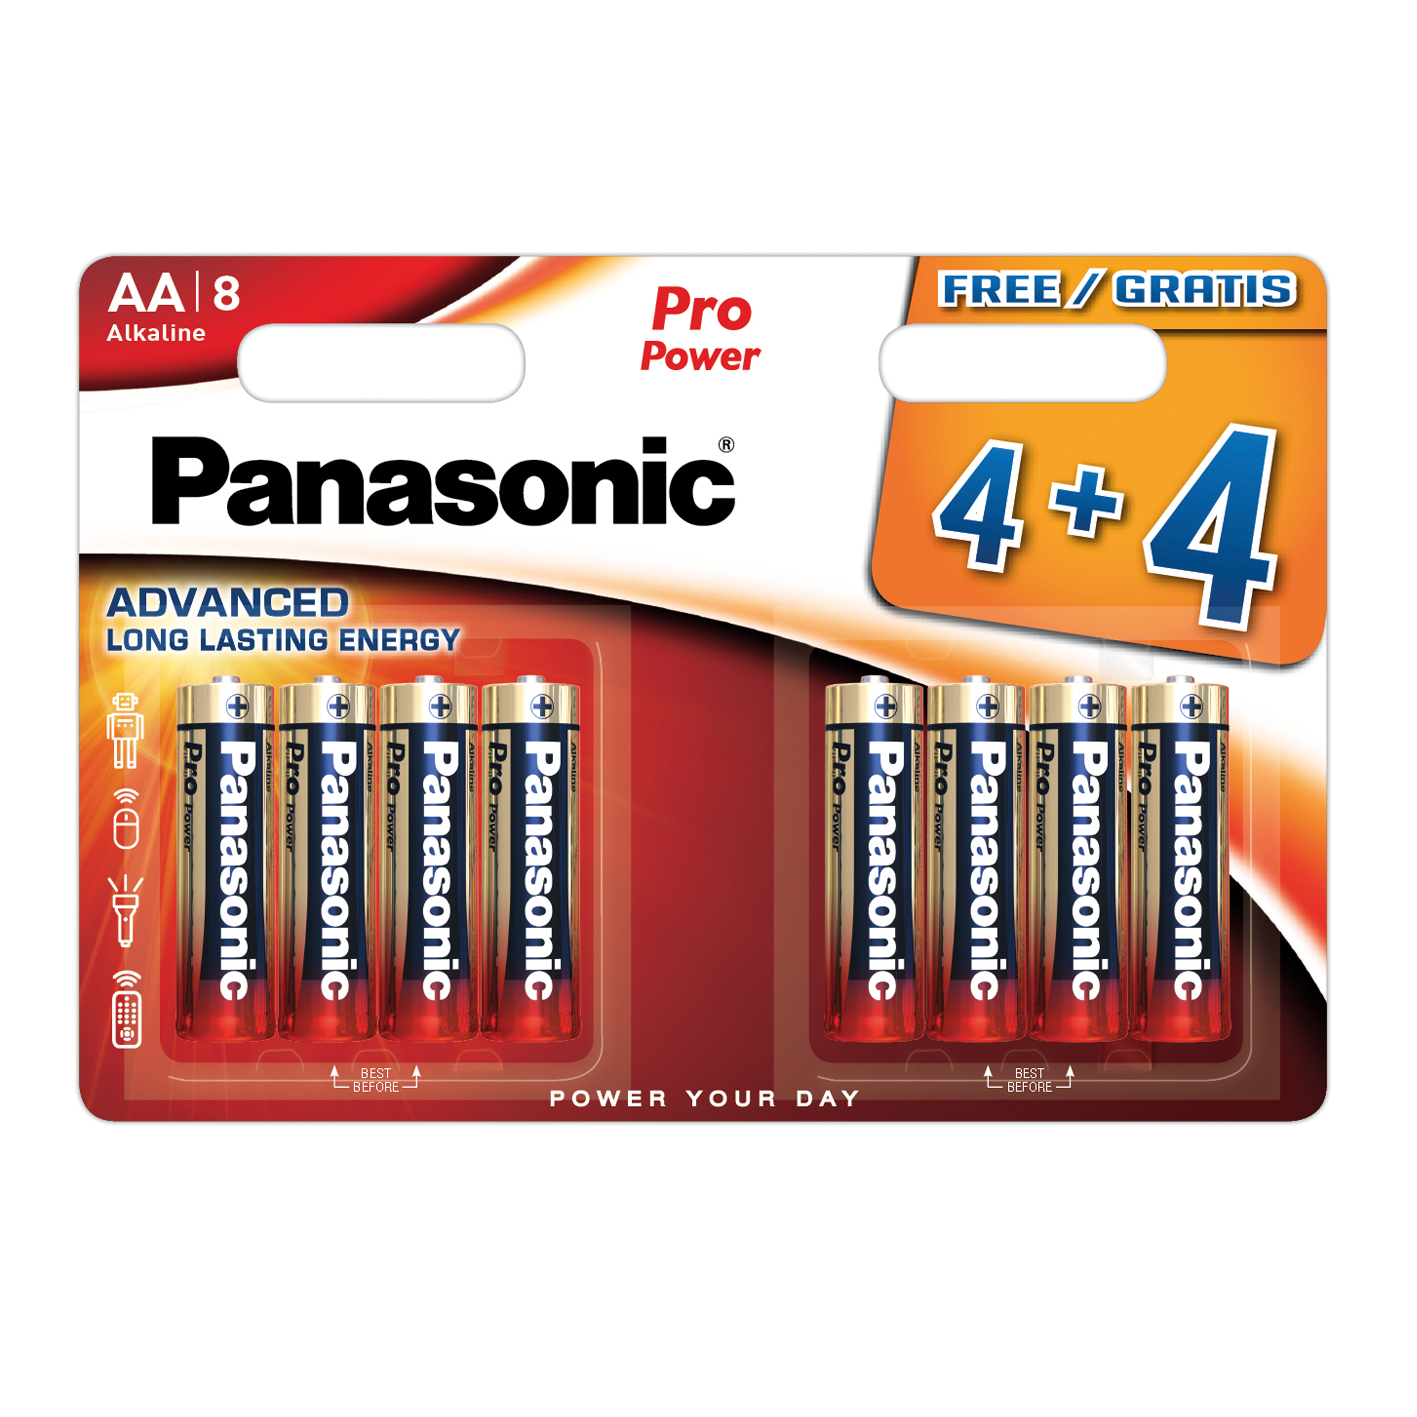 Panasonic AA Pro Power, paquete de 4+4